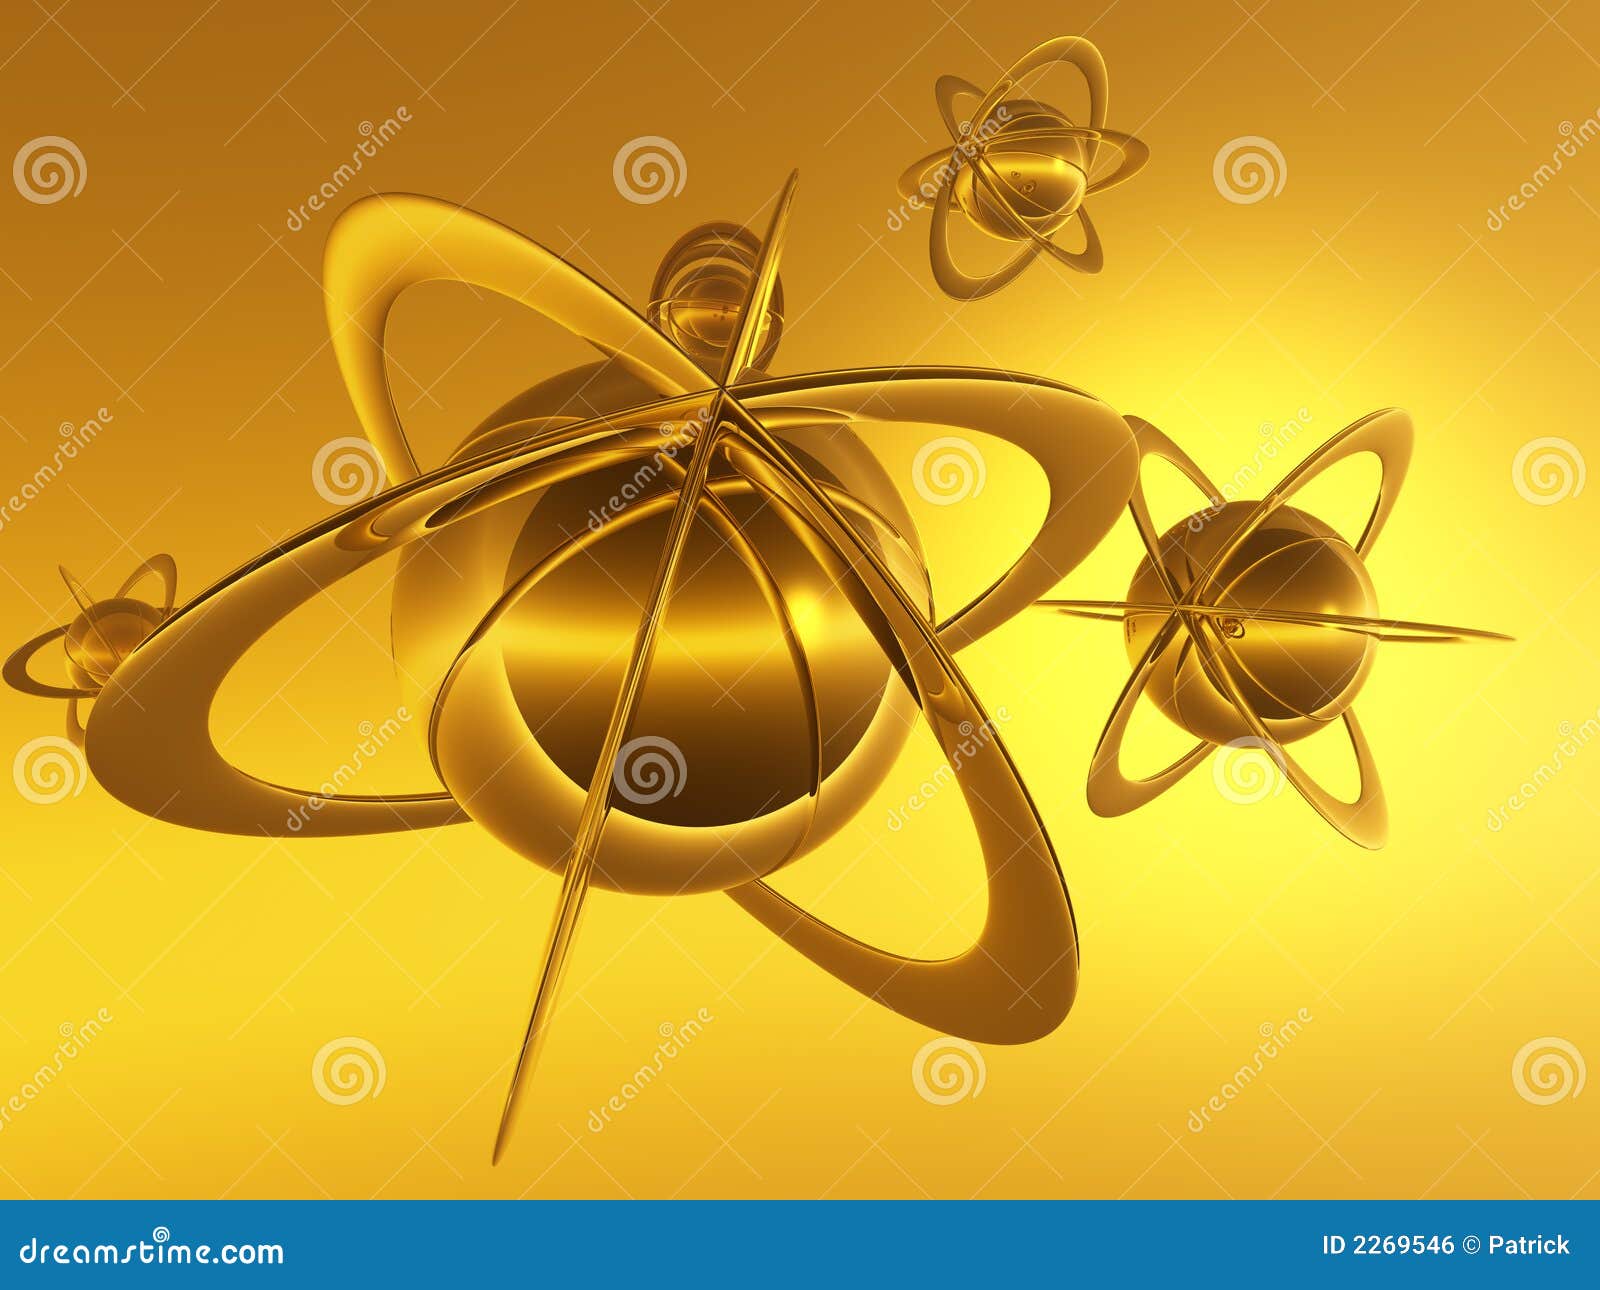 Micro космоса. обои физики молекулы иллюстрации космоса принципиальной схемы предпосылки атома 3d микро-